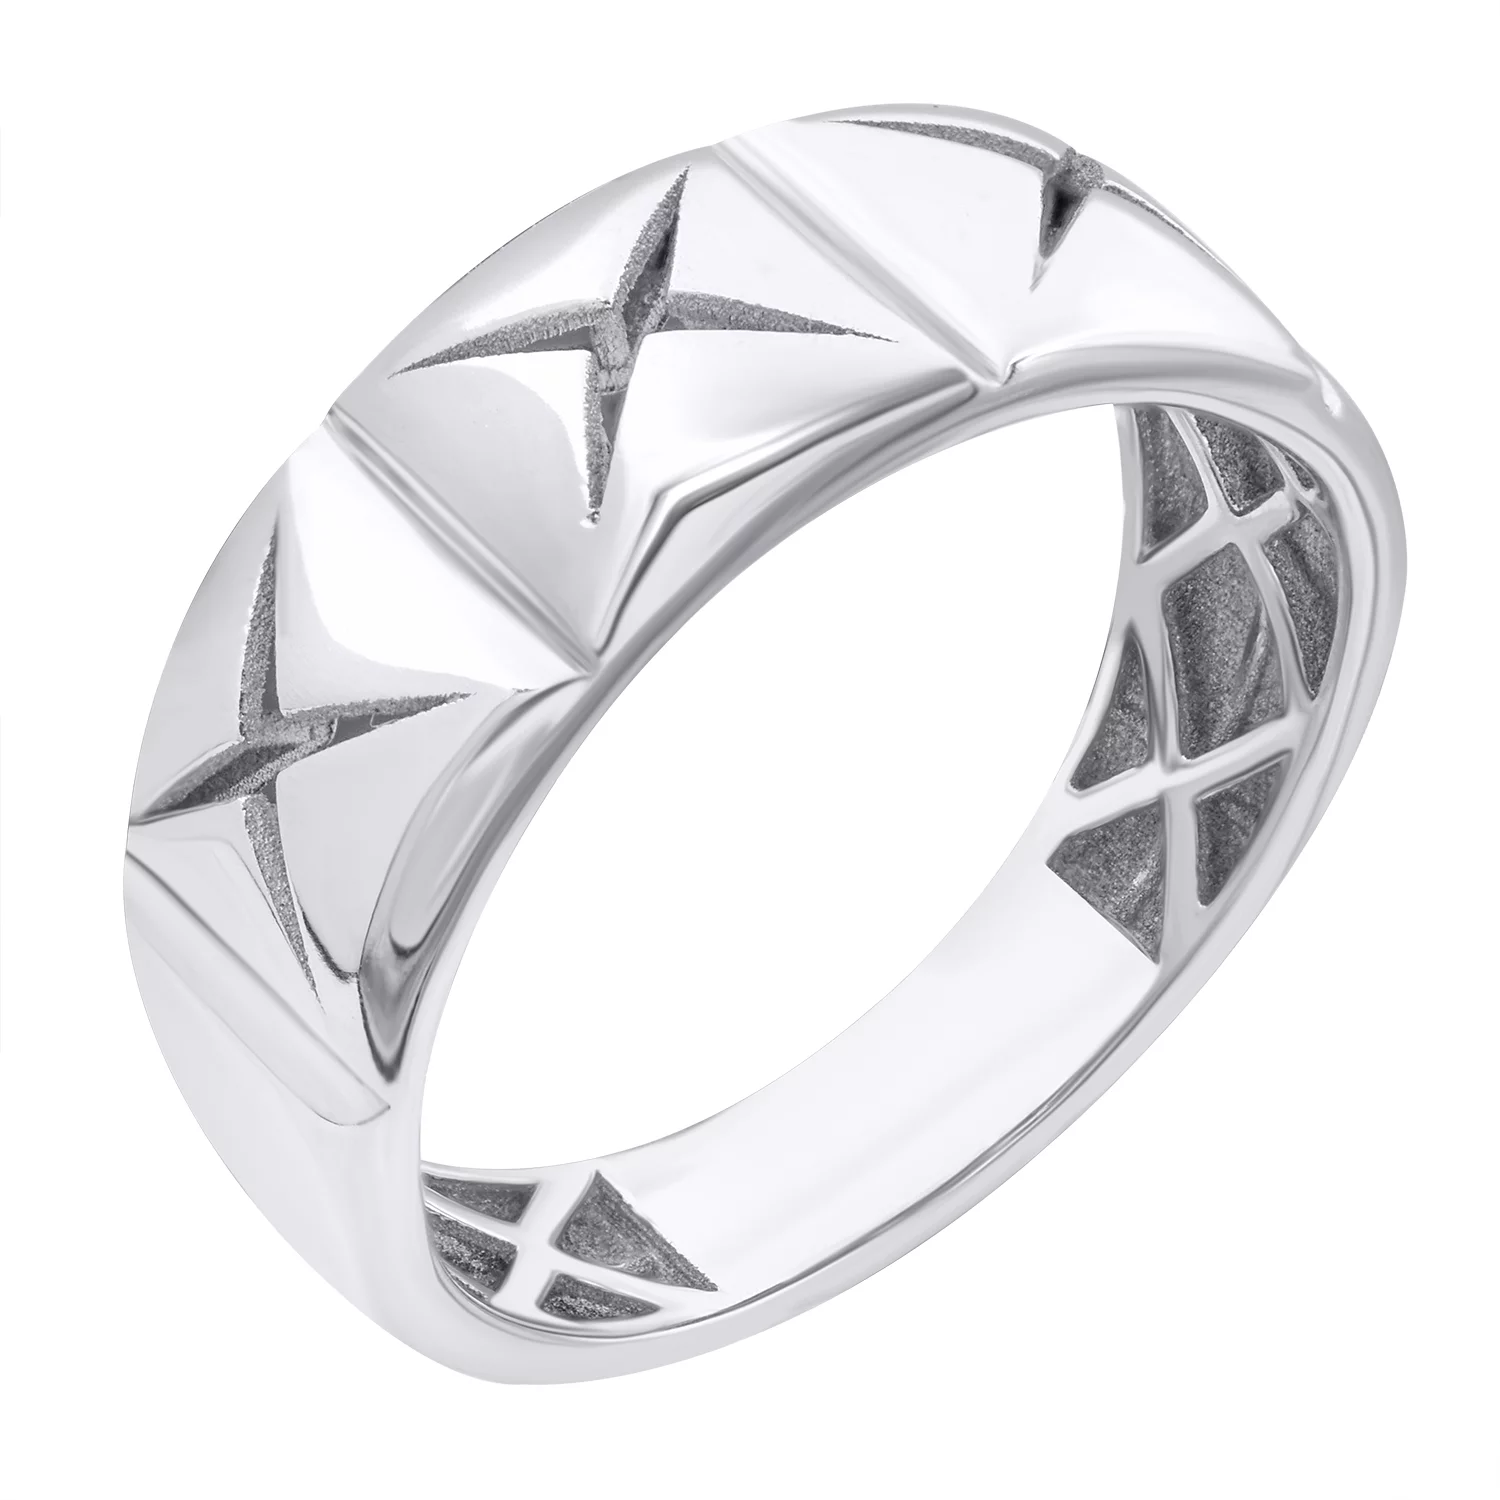 Кольцо серебряное с платиновым покрытием. Артикул 7501/500764-Пл: цена, отзывы, фото – купить в интернет-магазине AURUM